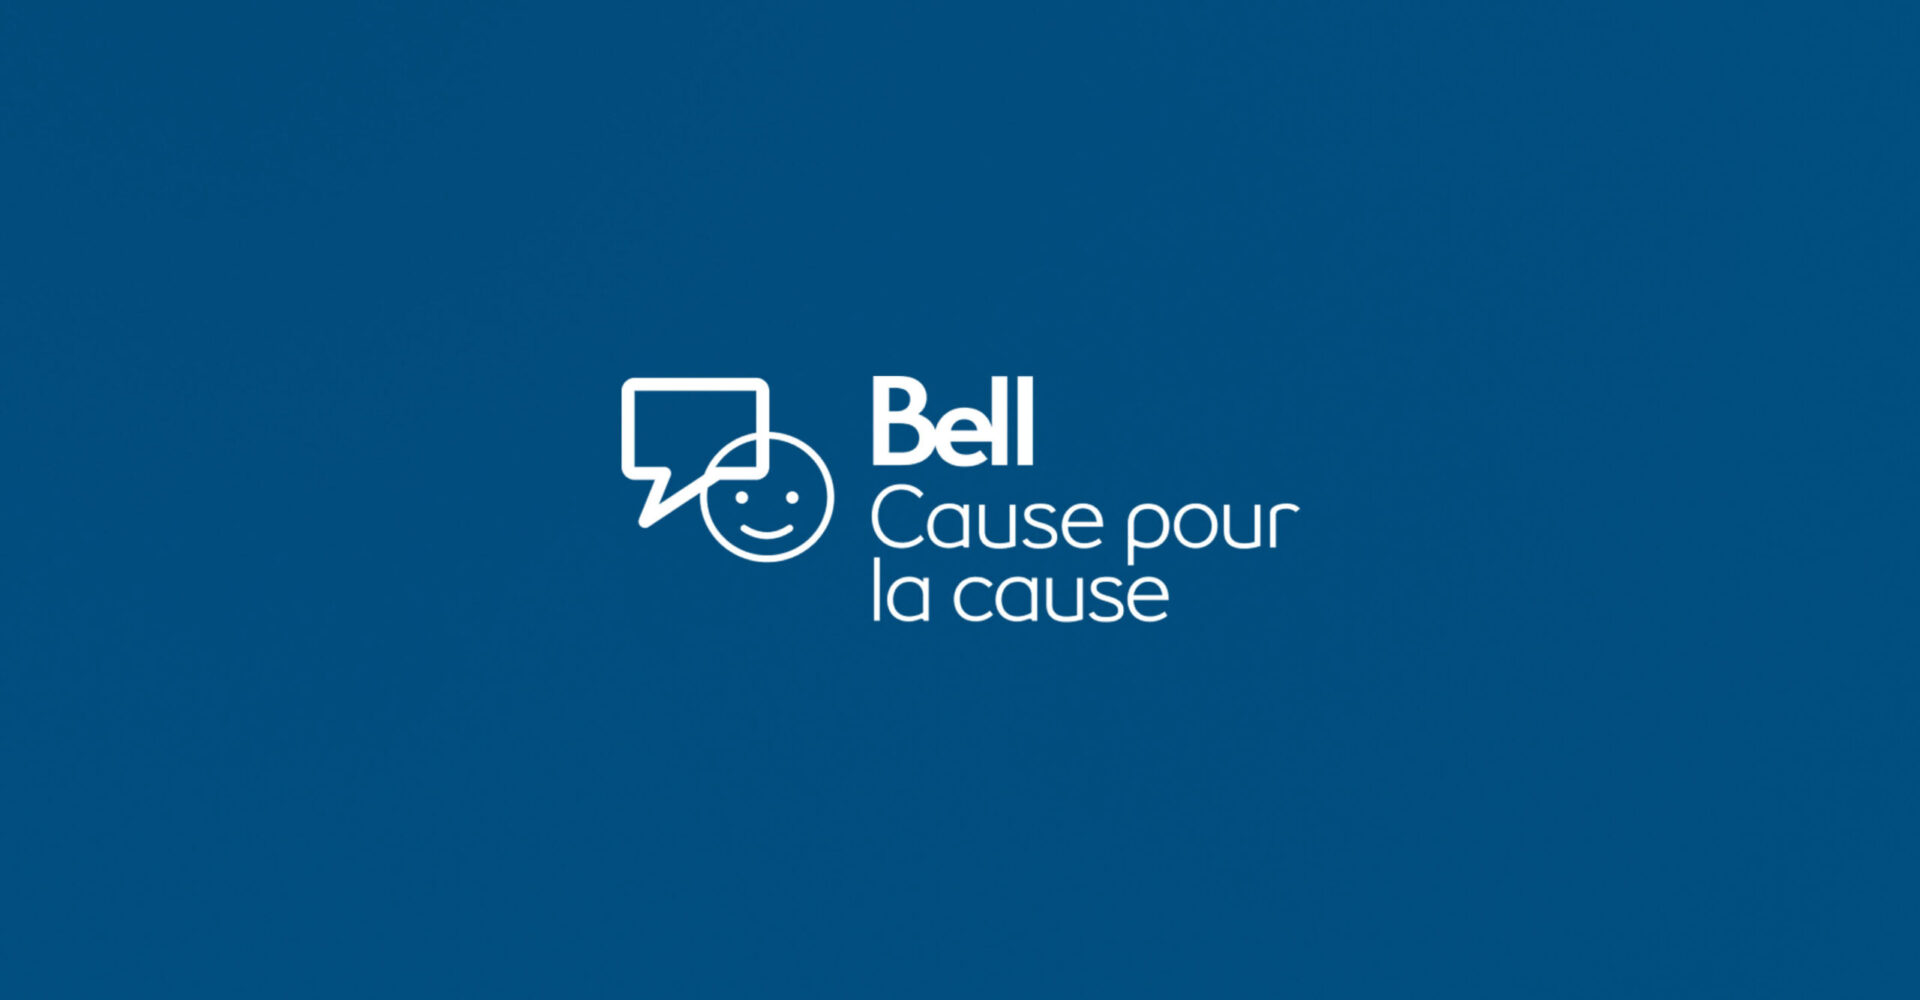 La Journée Bell Cause pour la cause